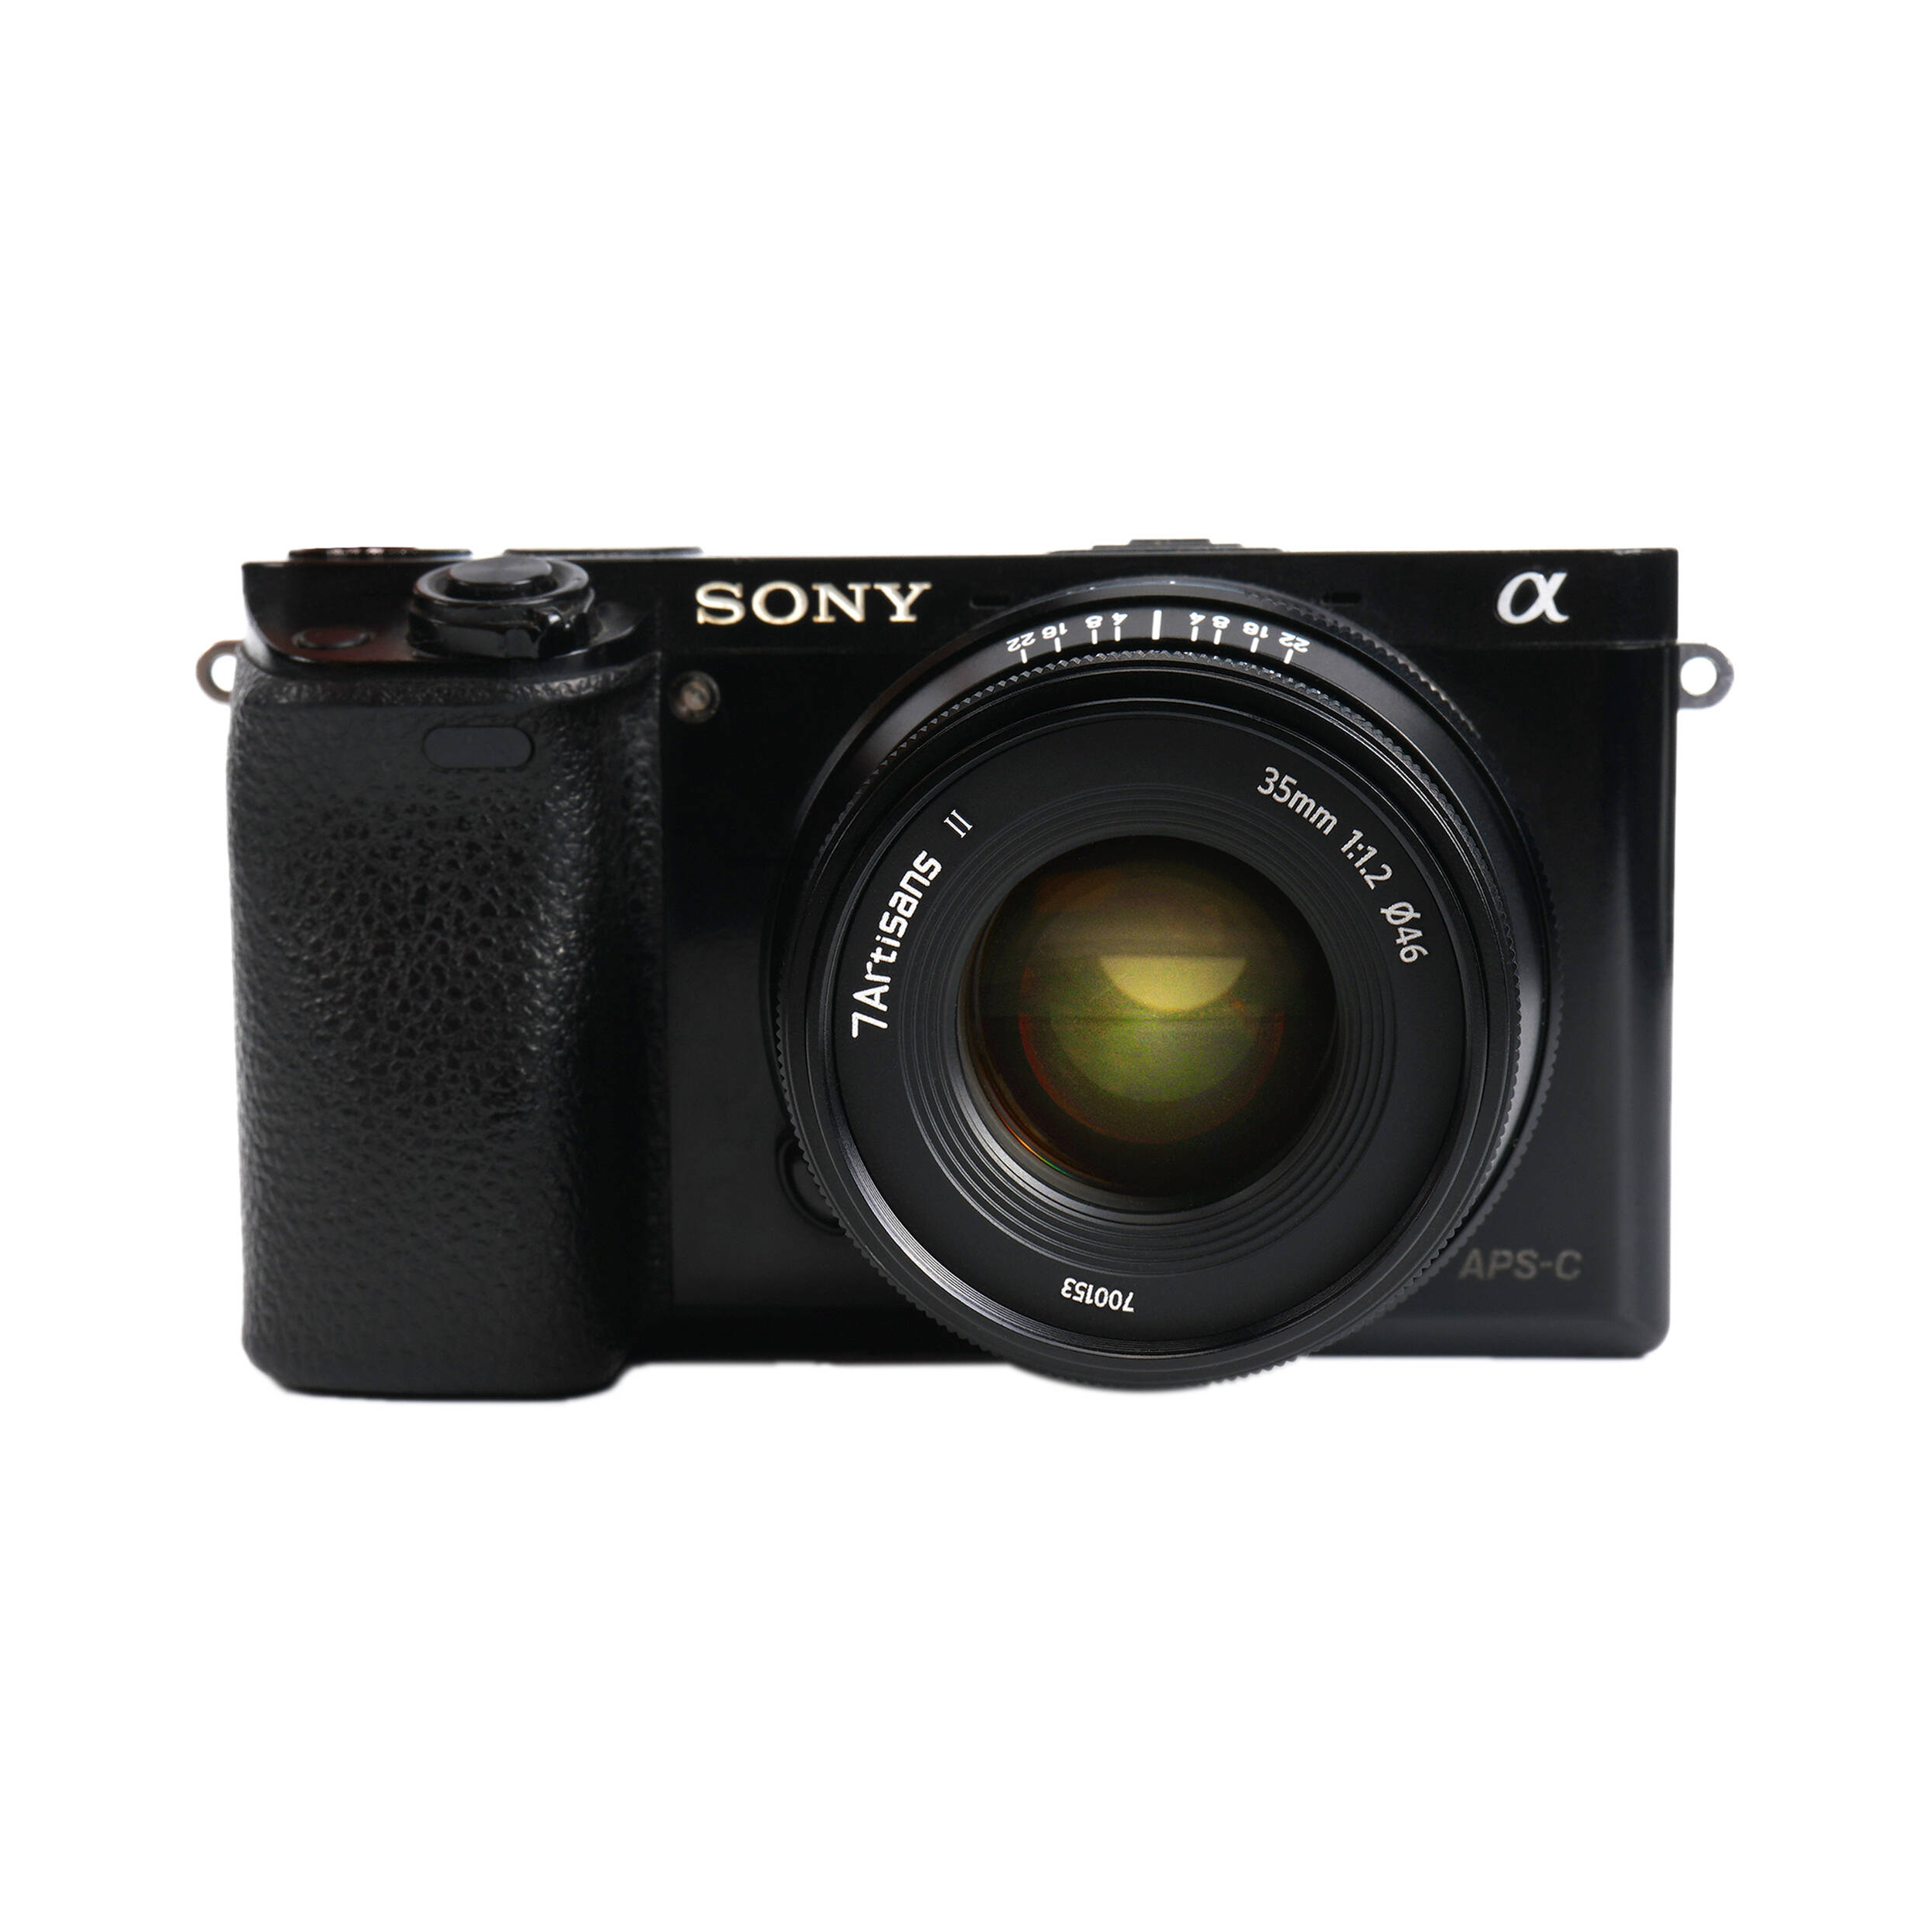 7artisans Photoelectric 35mm f/1.2 Mark II Lens for Sony E Mount